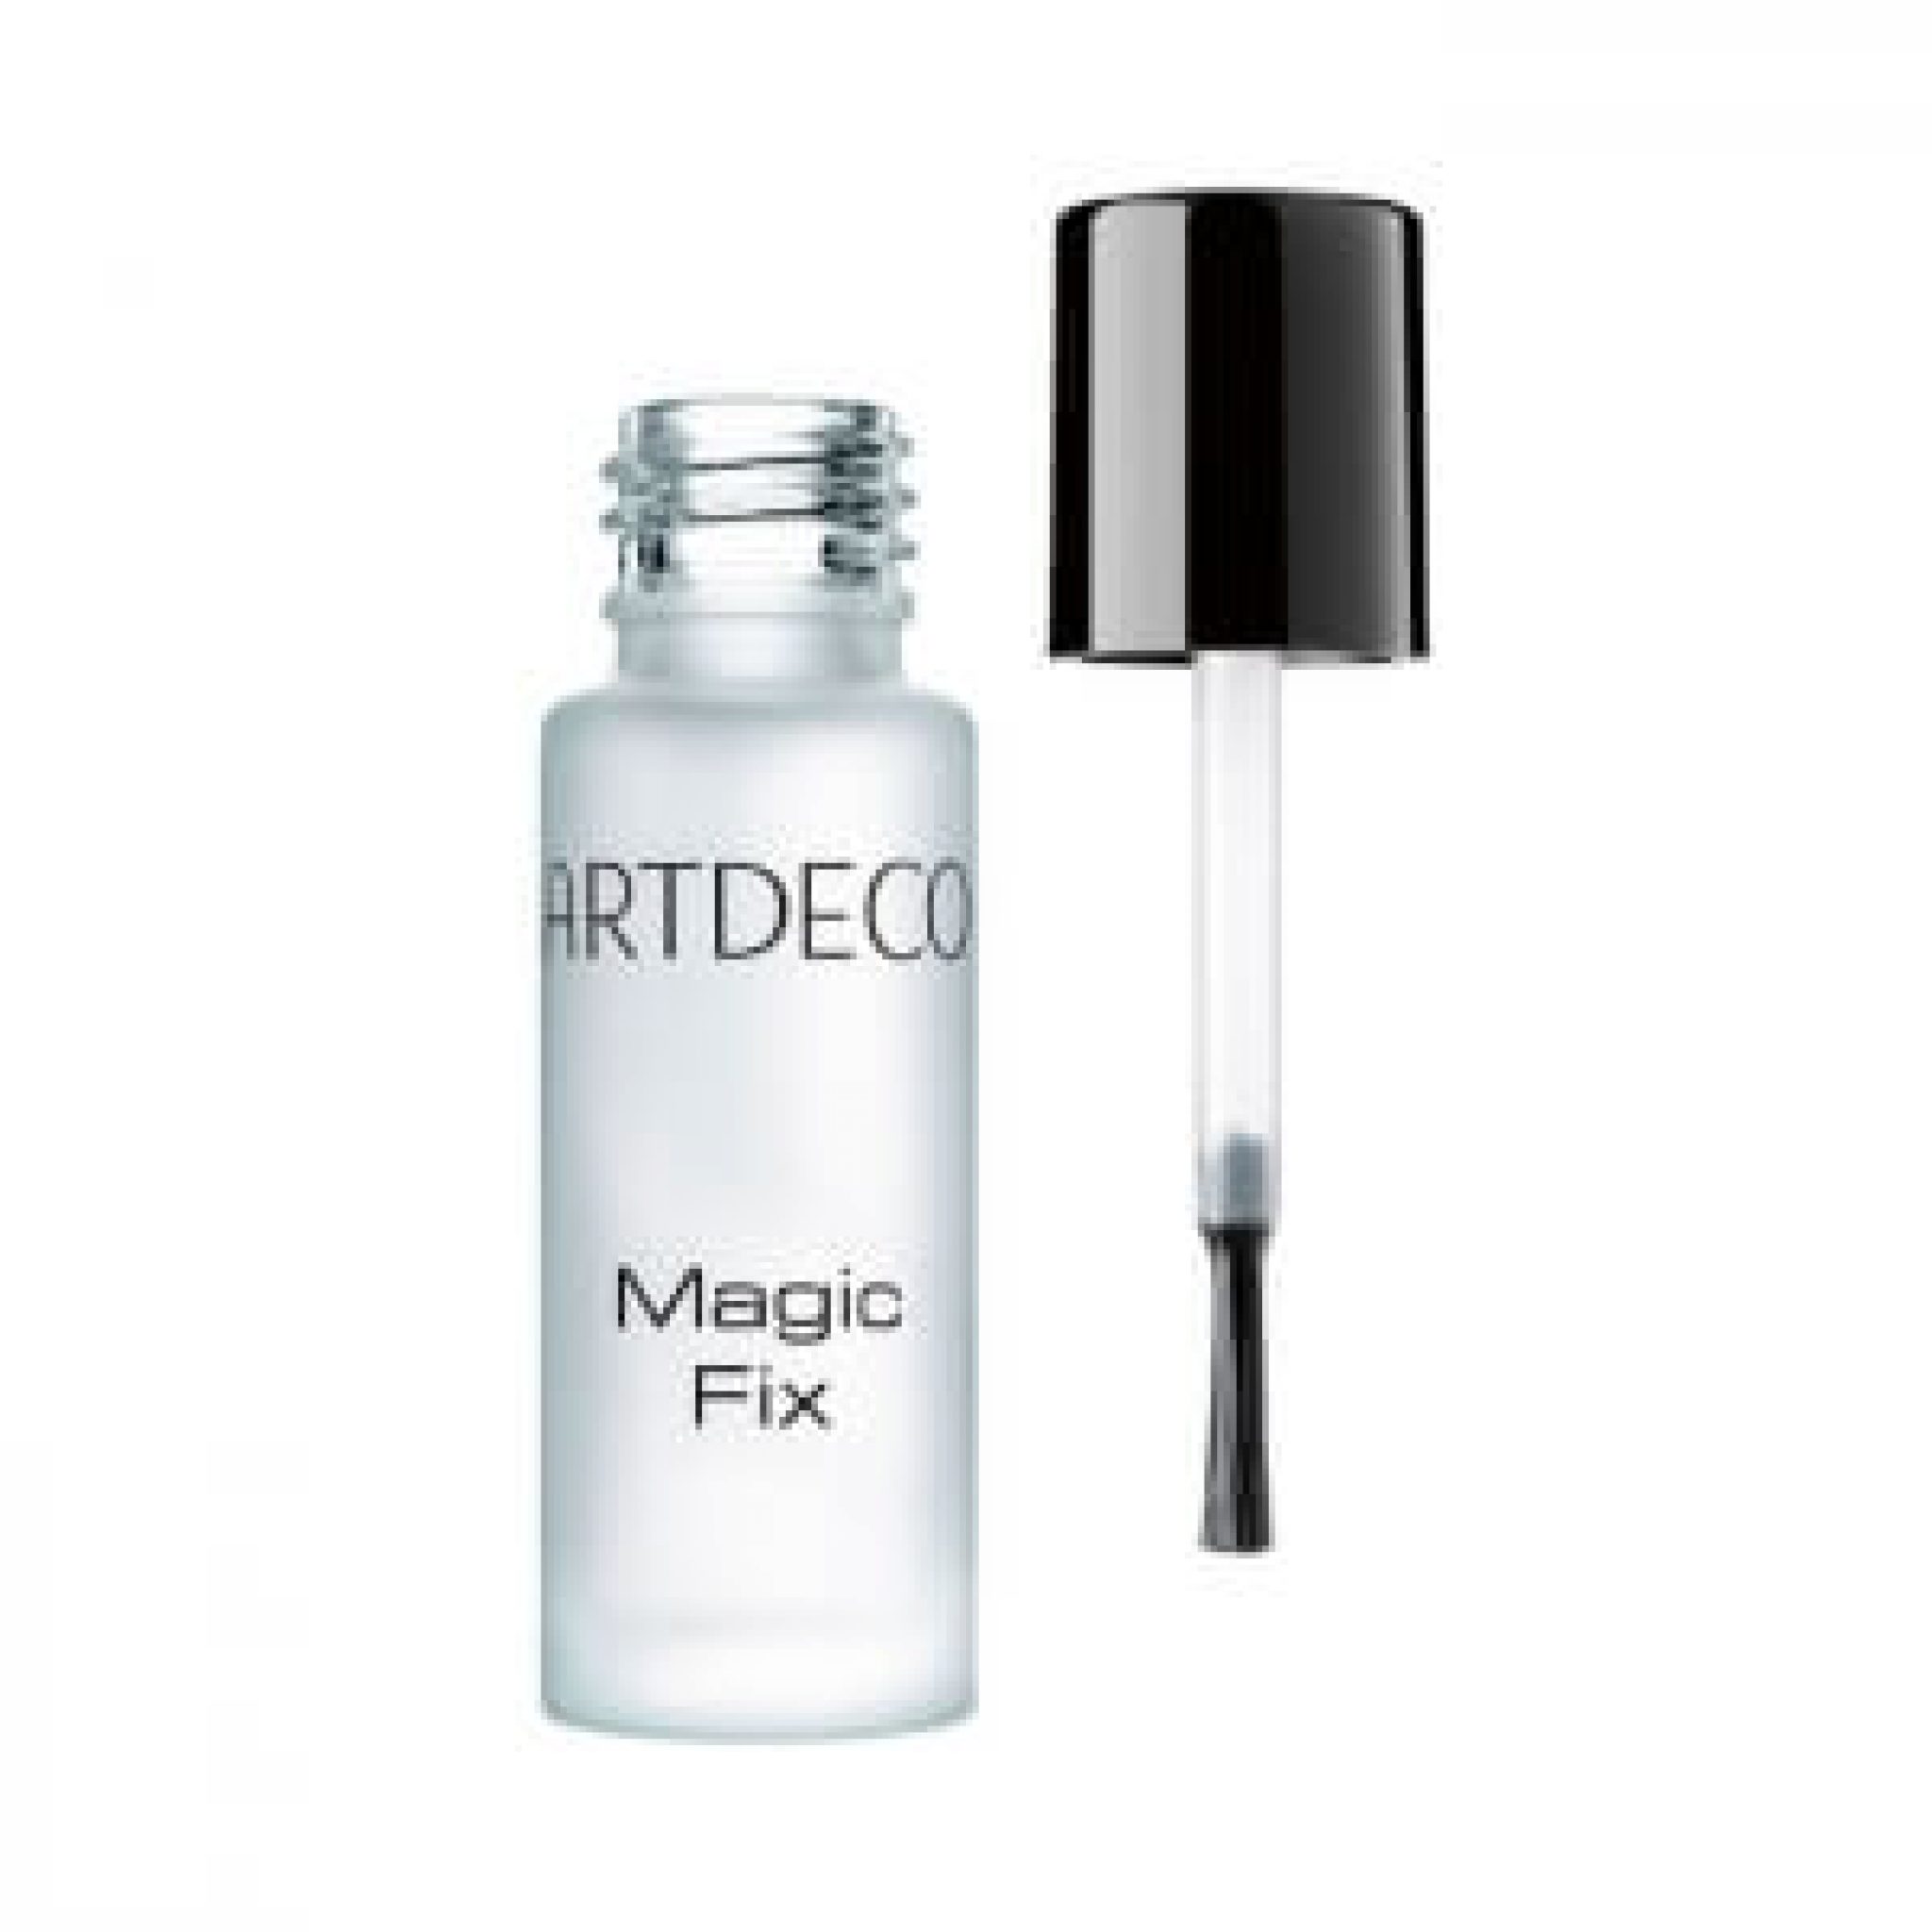 Artdeco Magic Fix Lip Fixer erfahrung